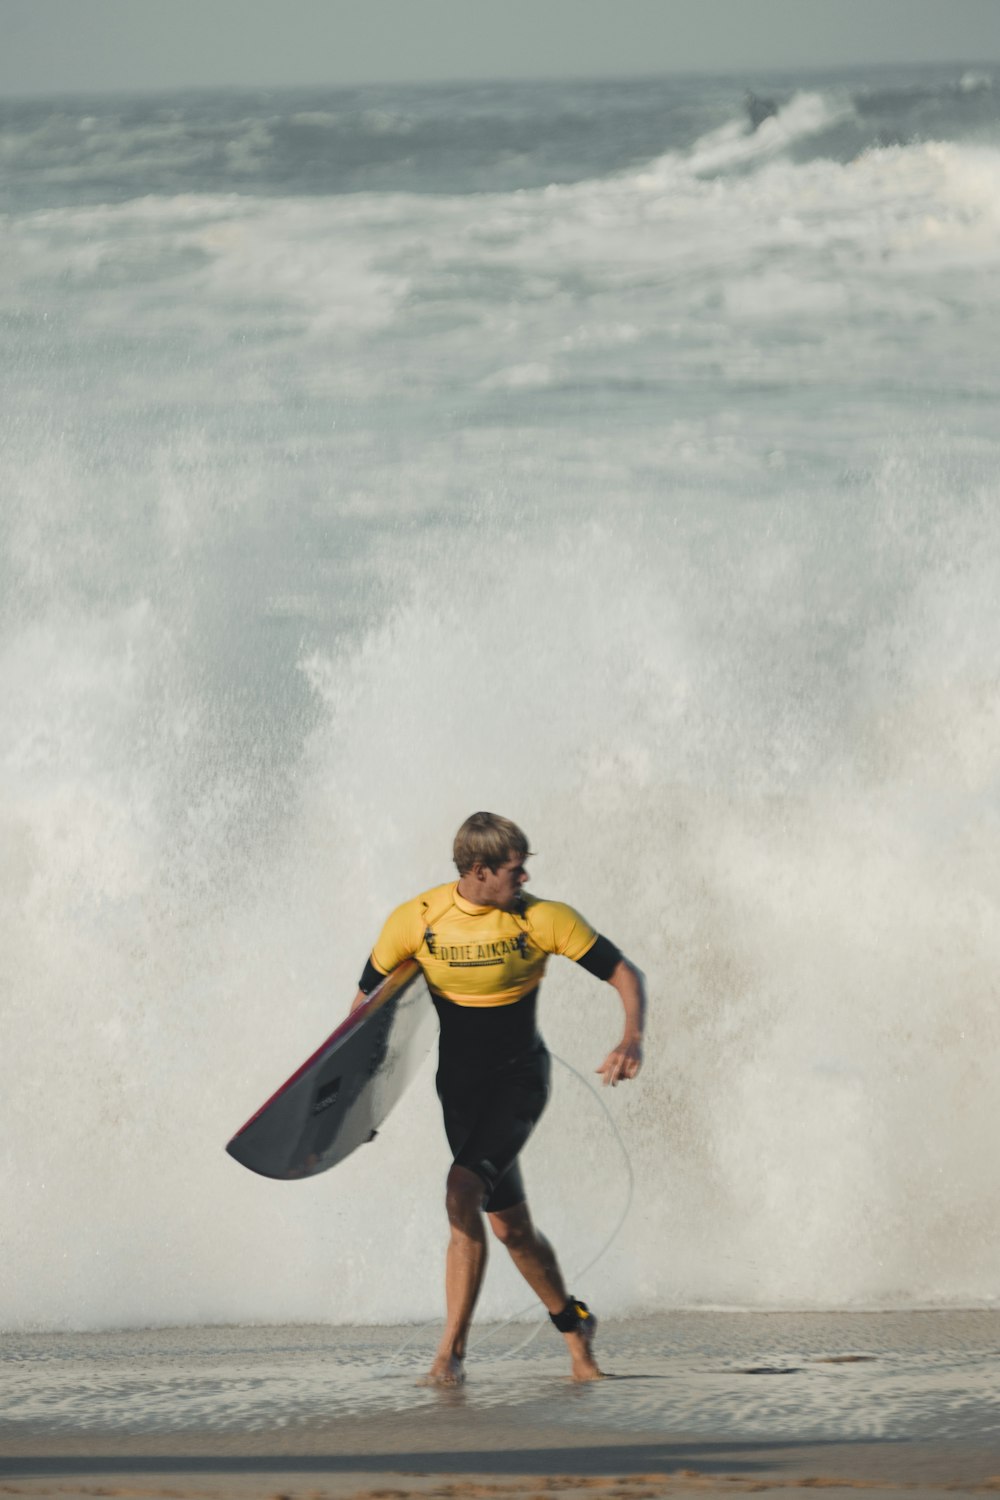 잠수복을 입은 남자가 서핑 보드를 들고 있습니다.